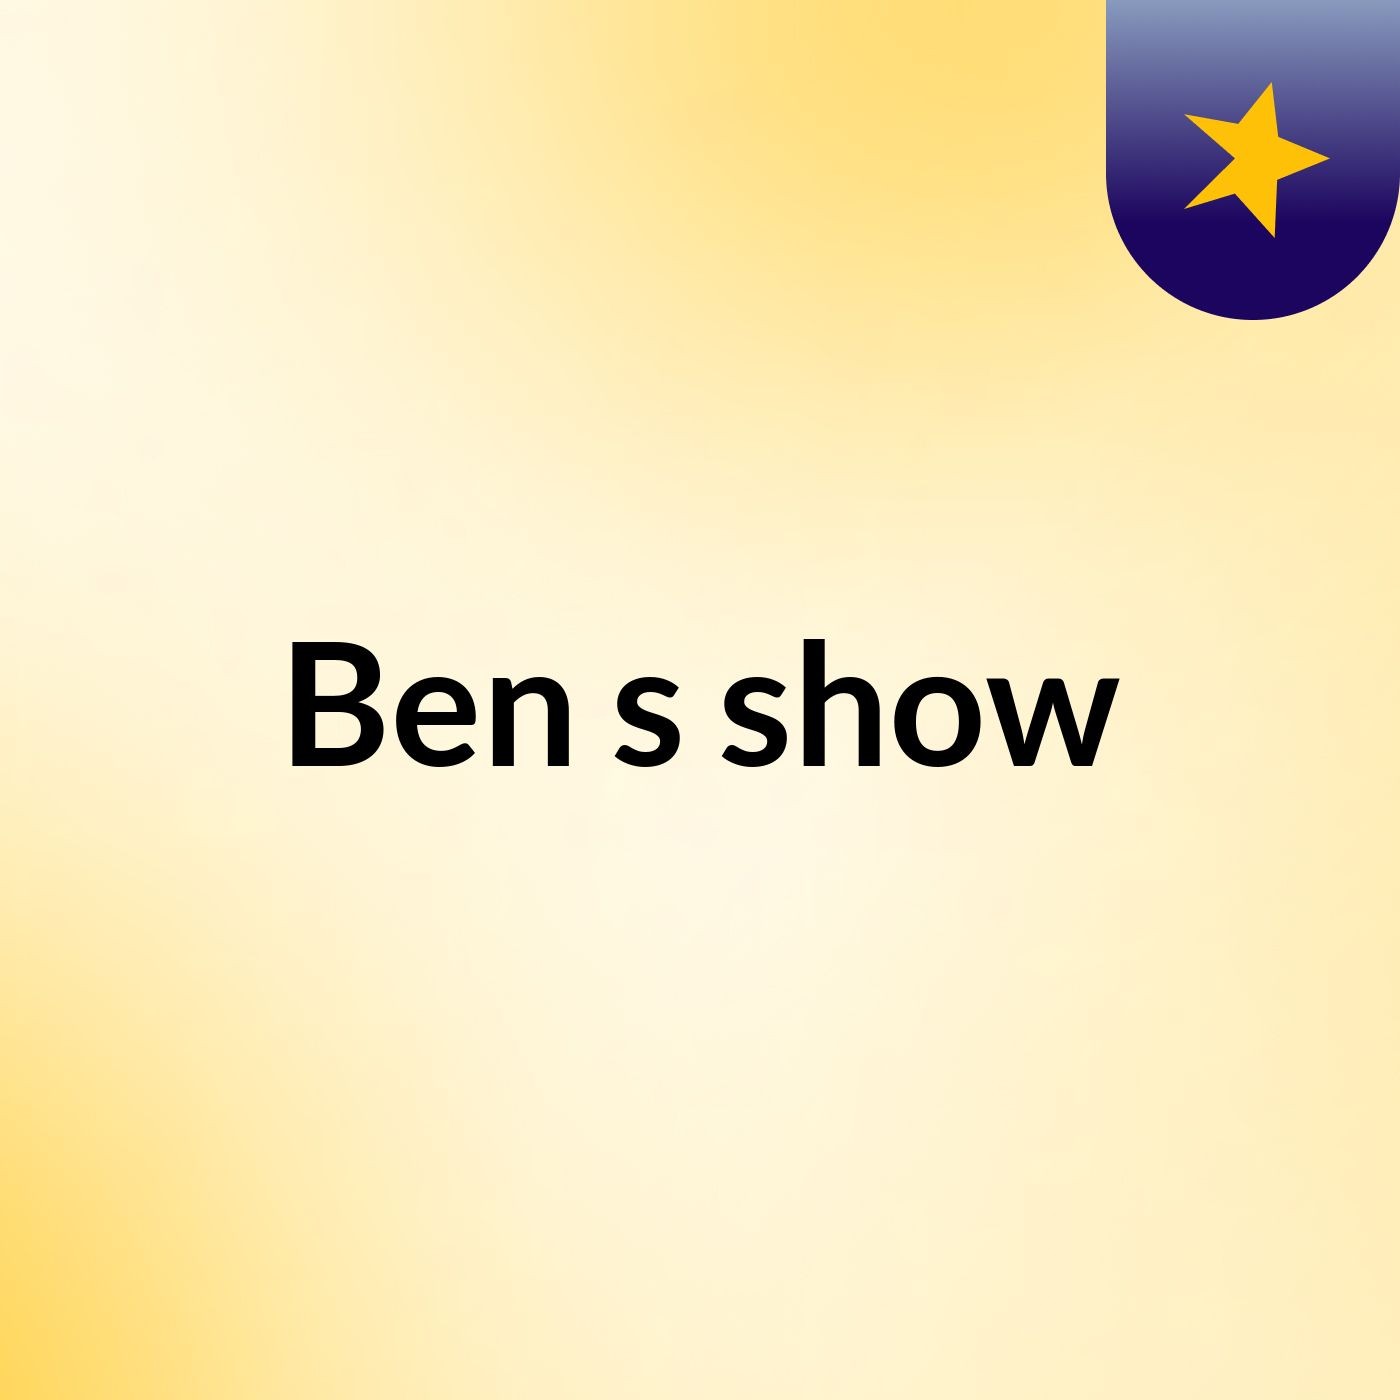 Ben's show